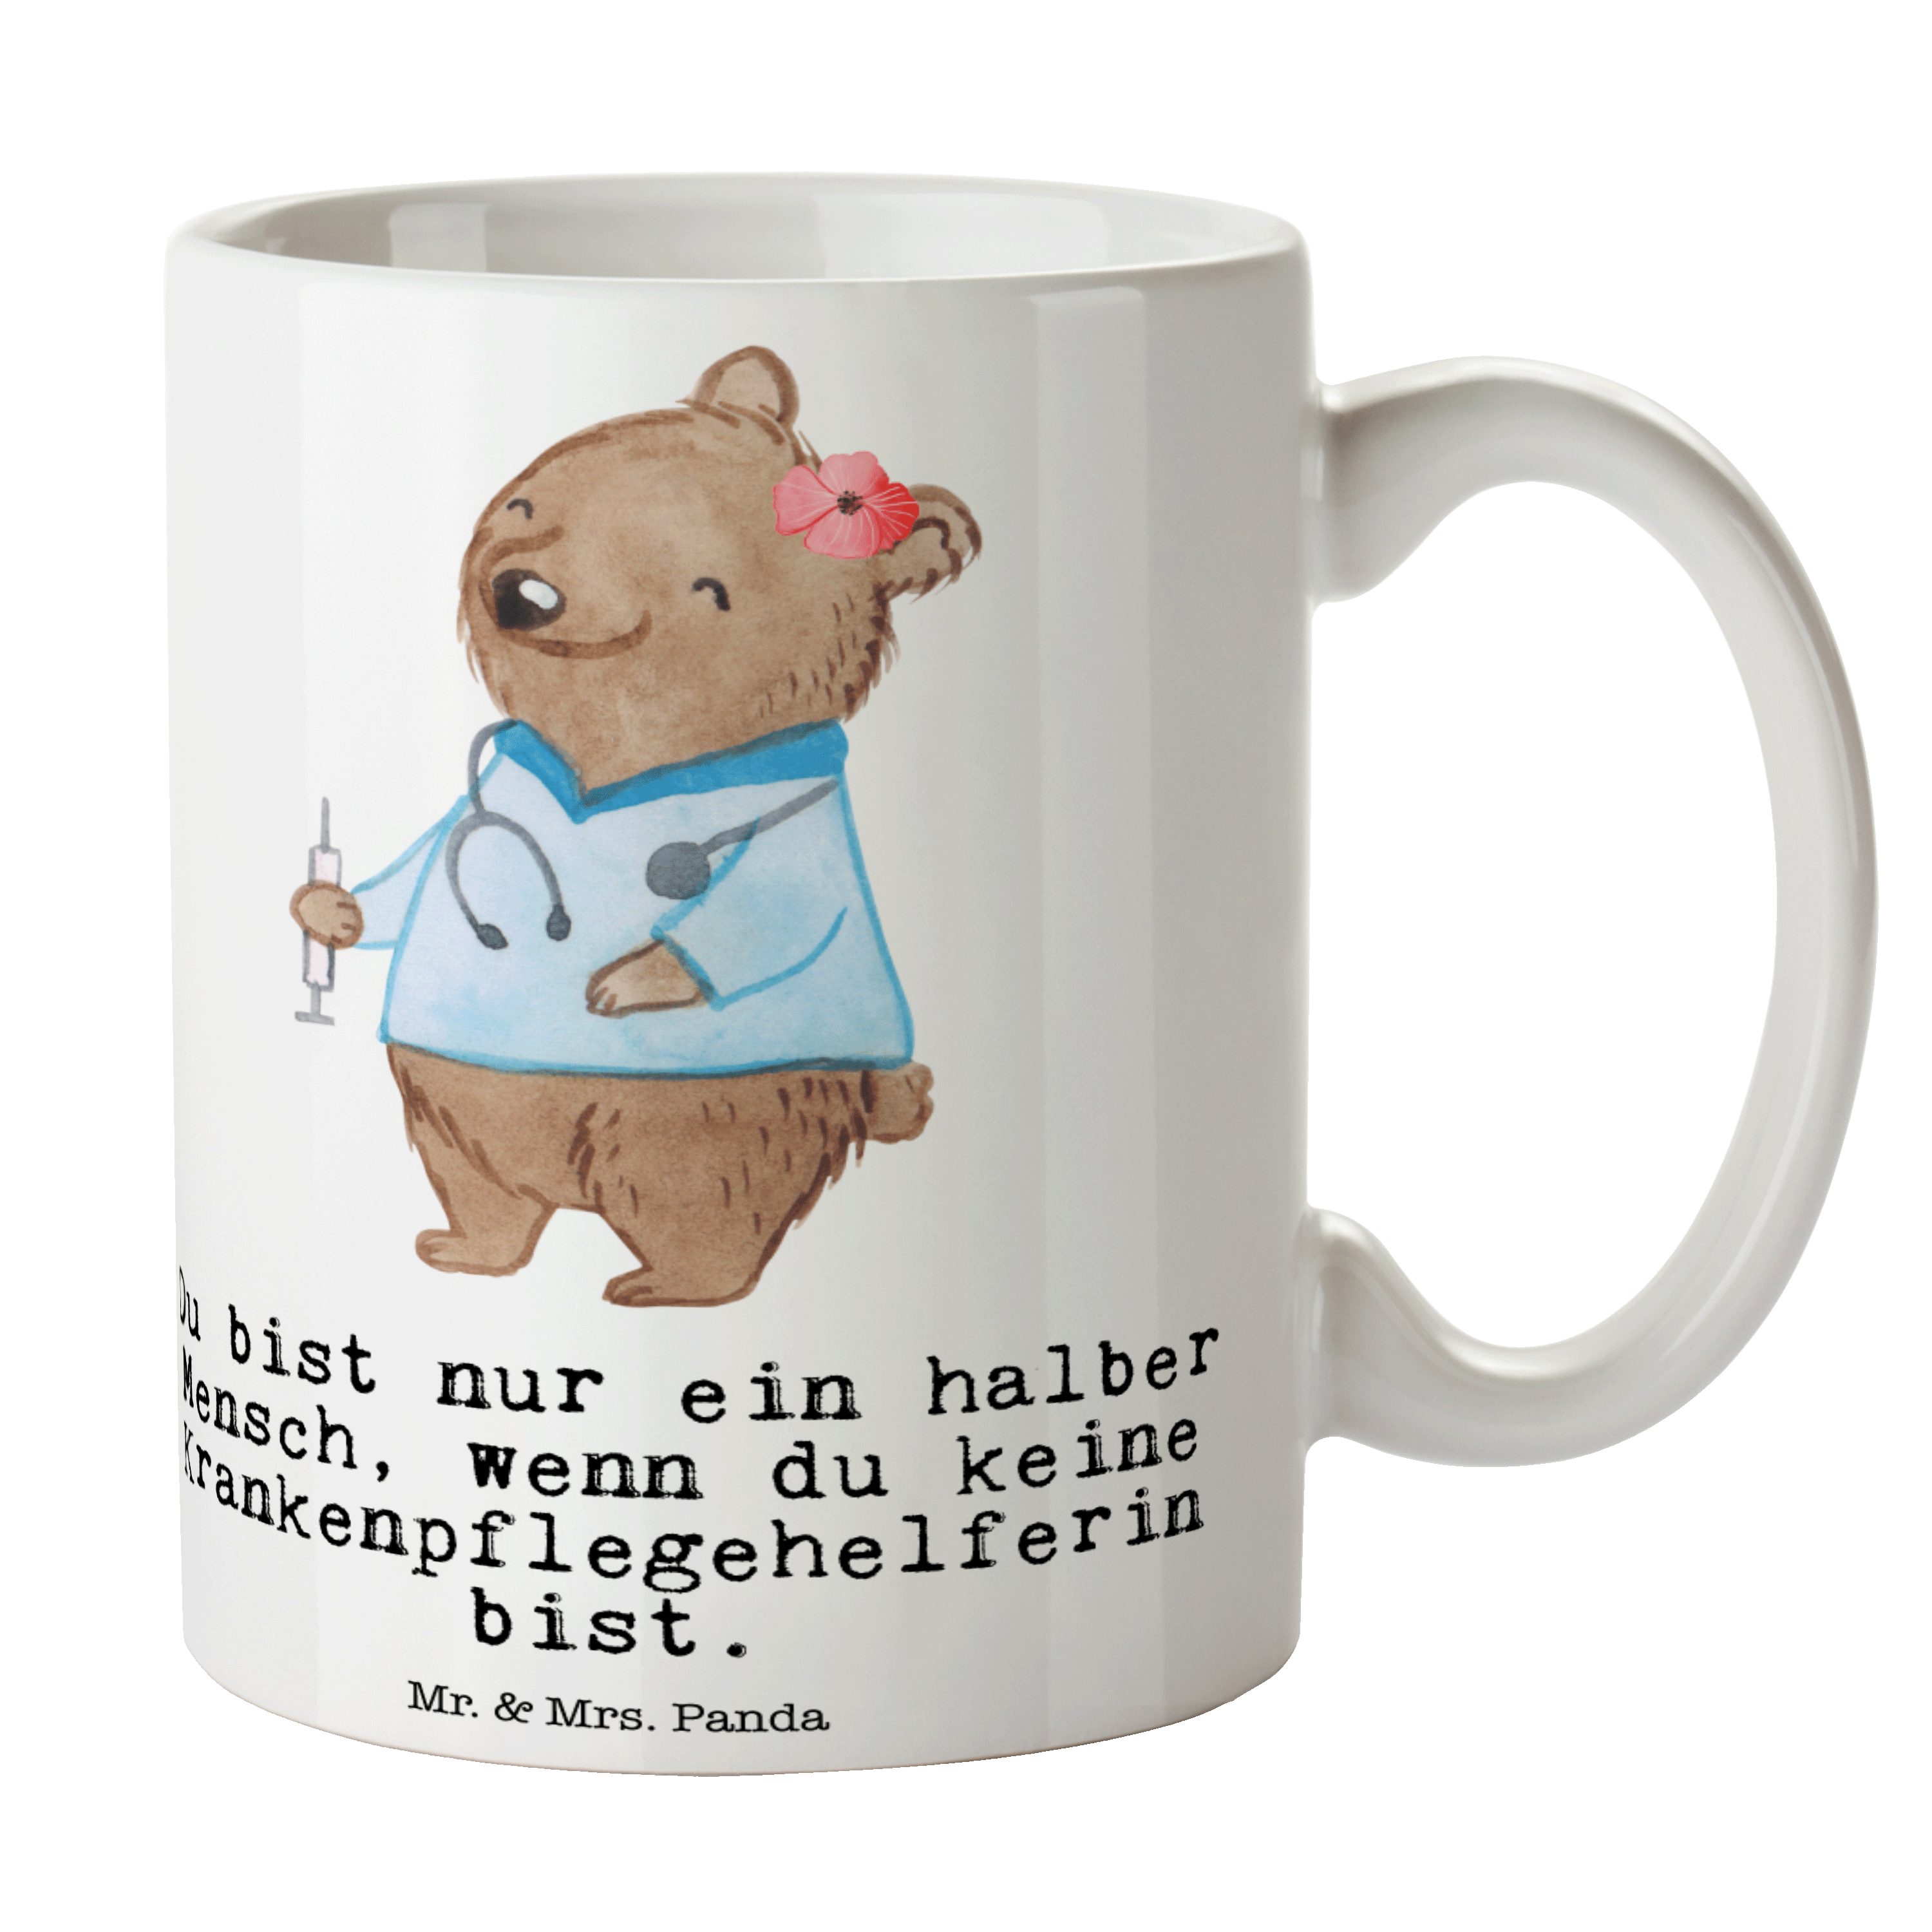 Mr. & Mrs. Panda Tasse Krankenpflegehelferin mit Herz - Weiß - Geschenk, Kaffeetasse, Pflege, Keramik